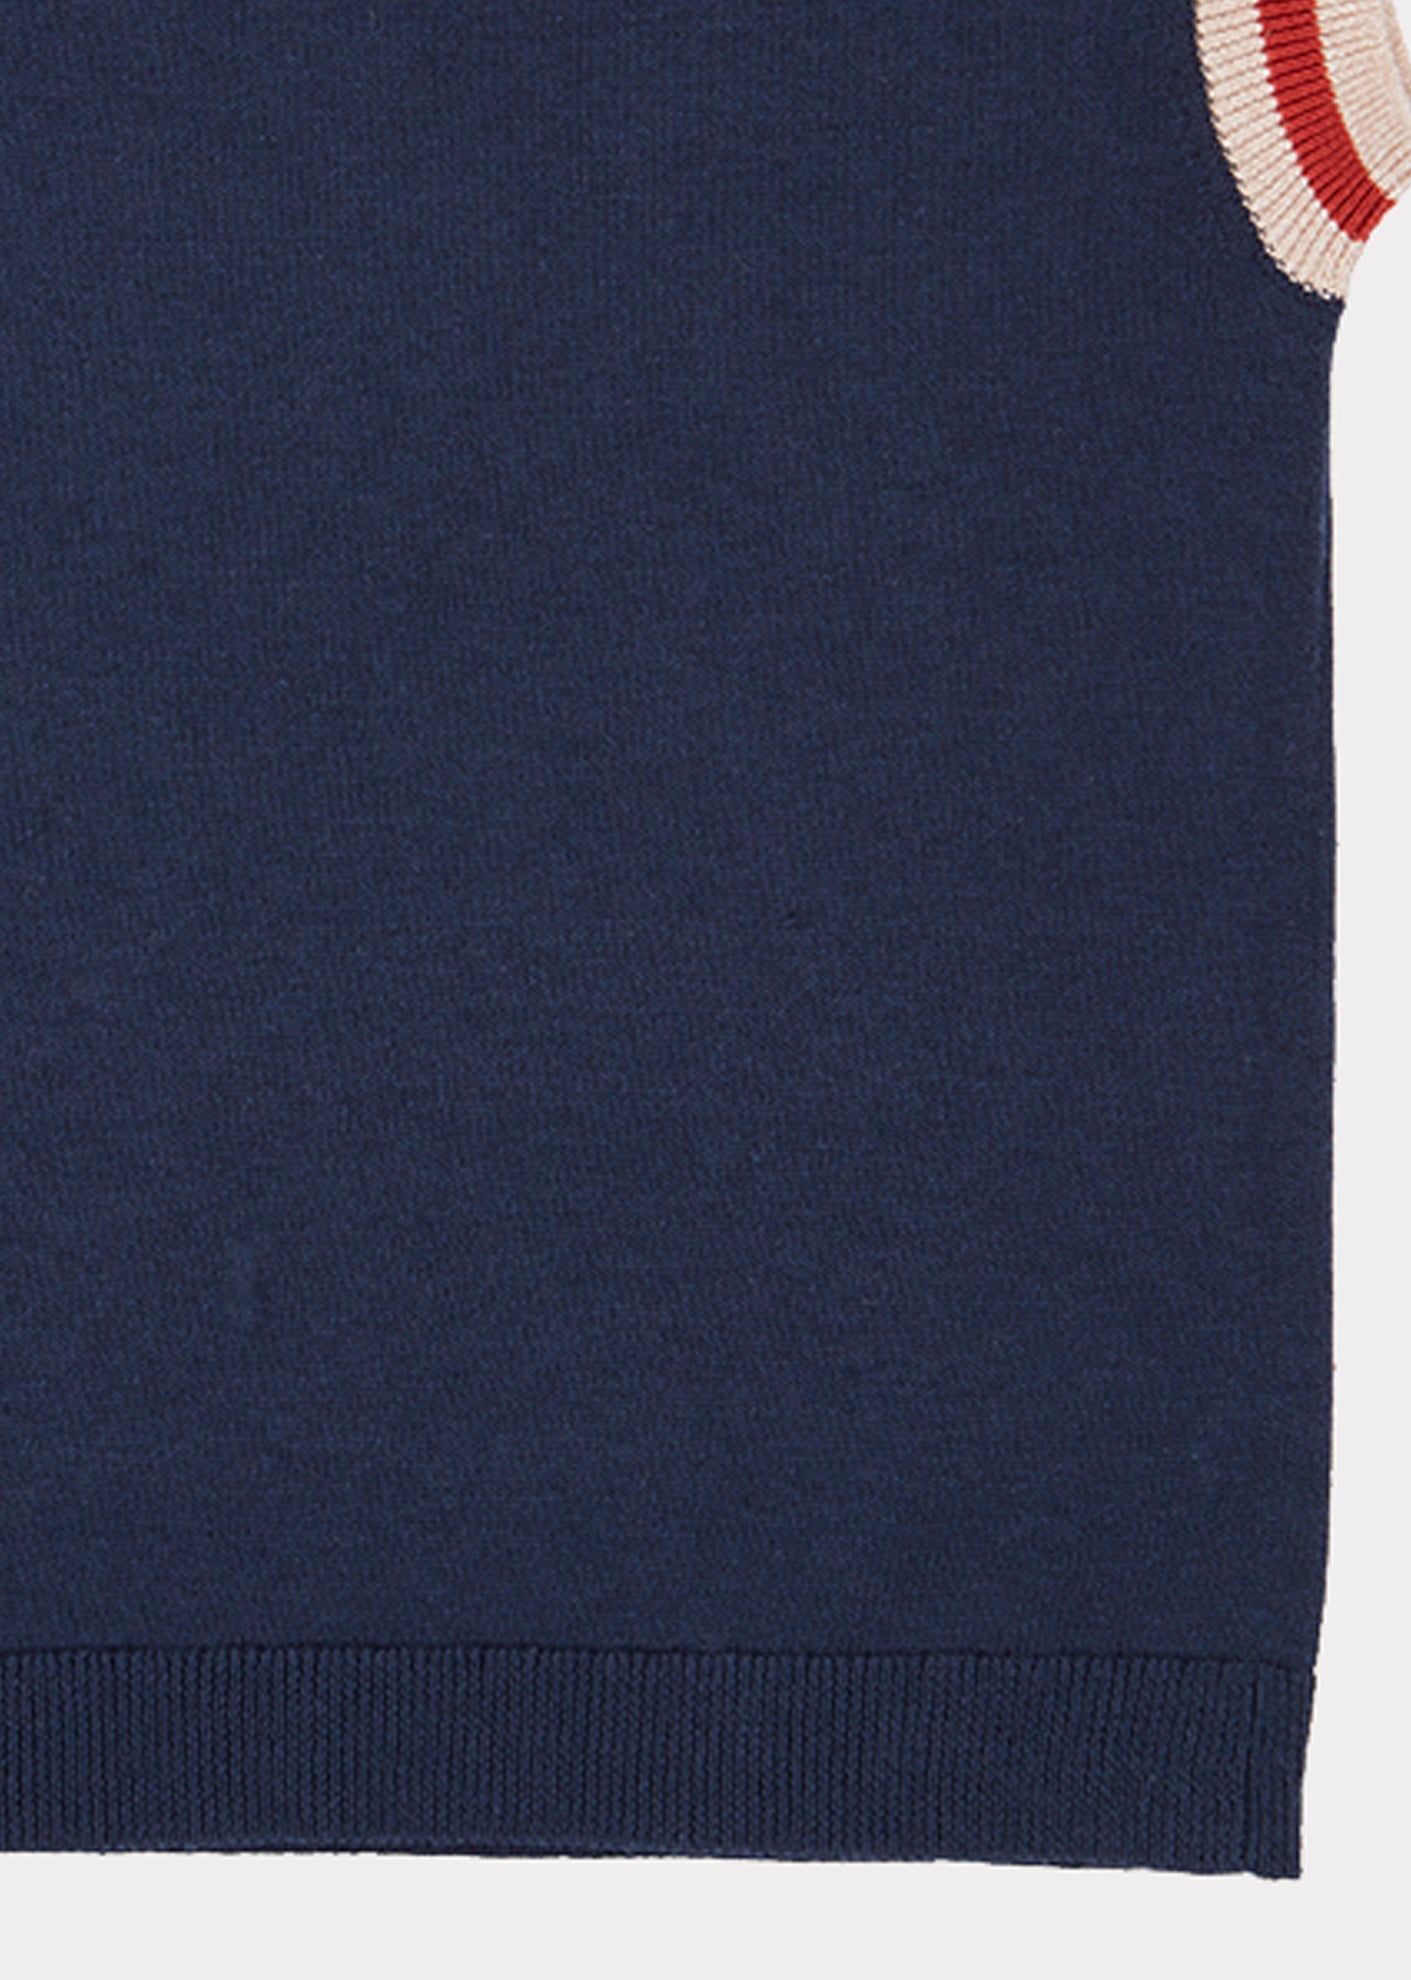 Girls Navy Knit Cotton Vest